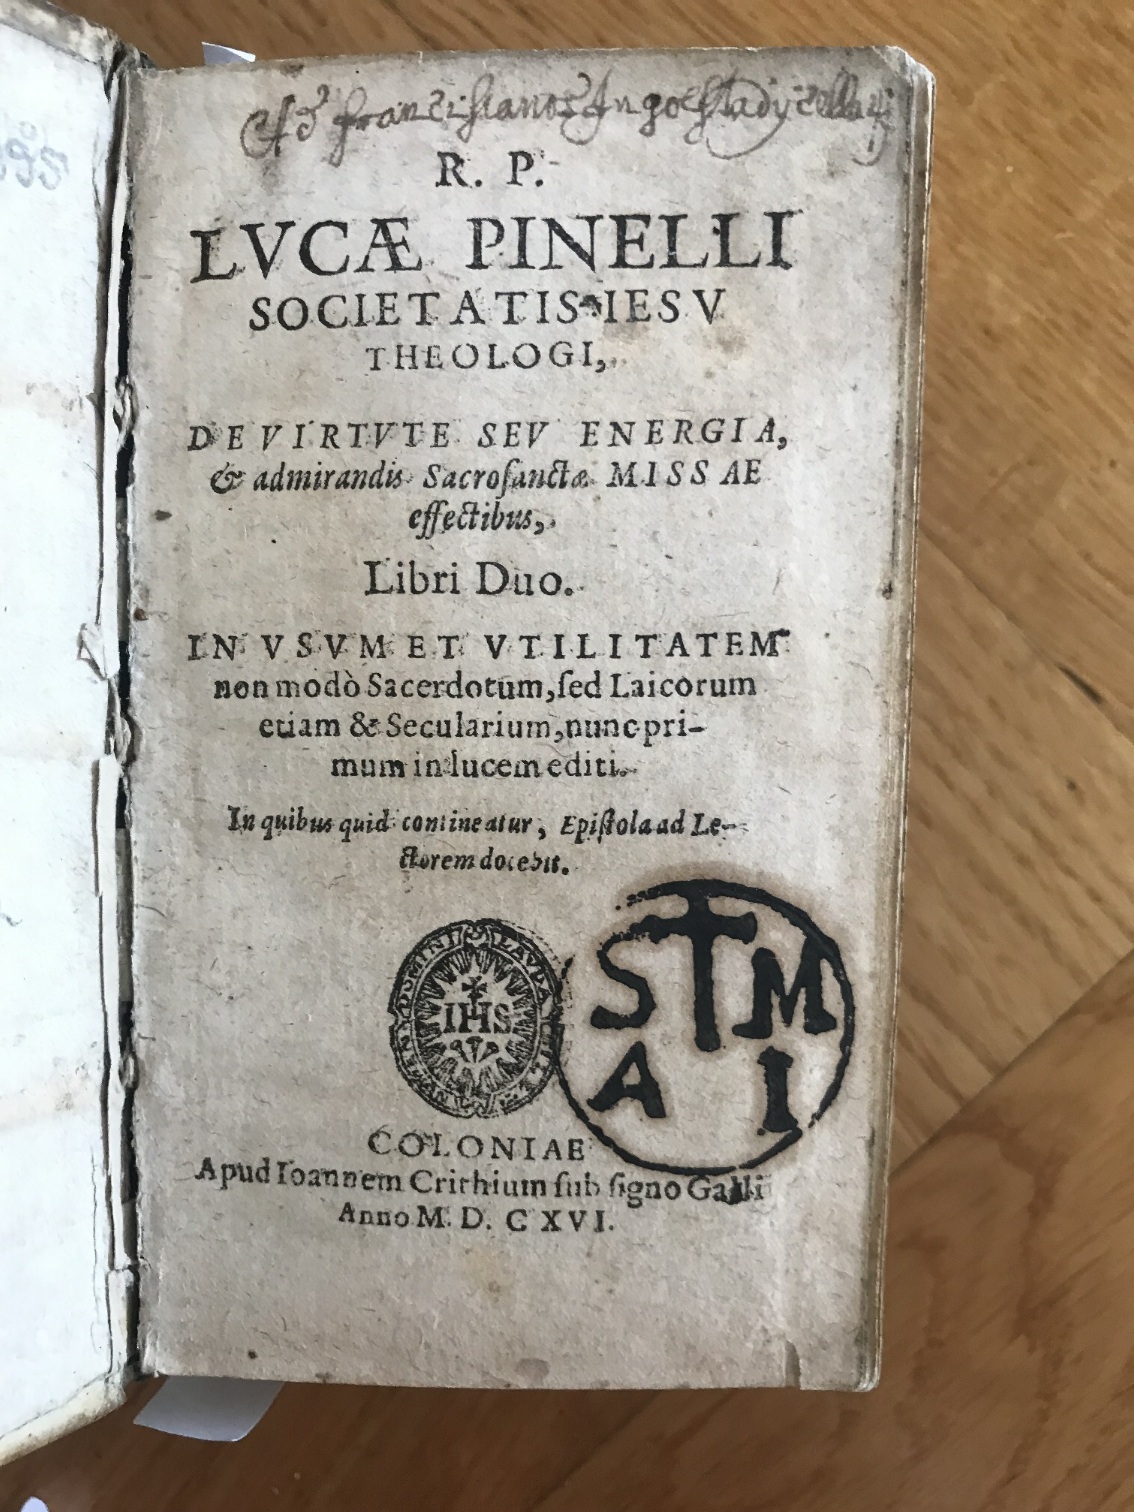 PINELLI, LUCA: - De Virtute Seu Energia, & admirandis Sacrosanctae Missae effectibus, Libri Duo..